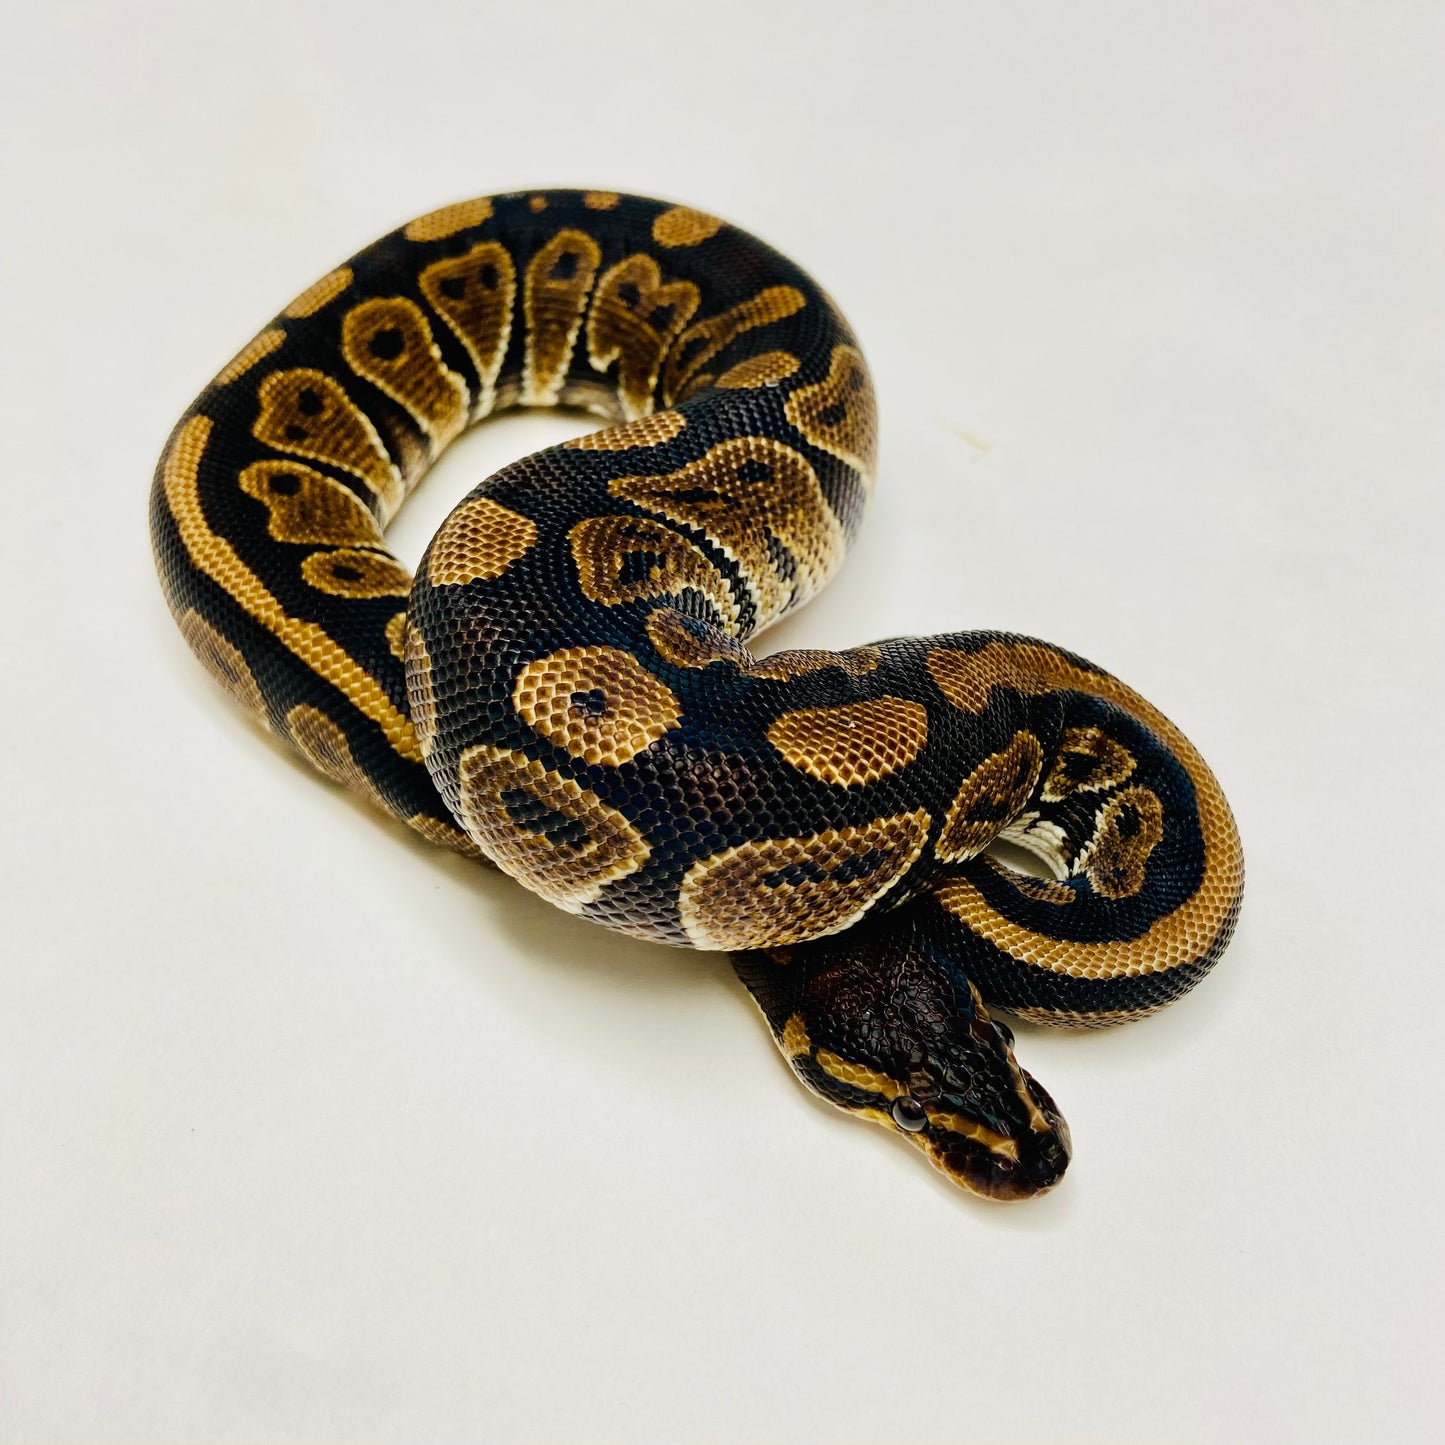 Mahogany Ball Python- Male #2023M04